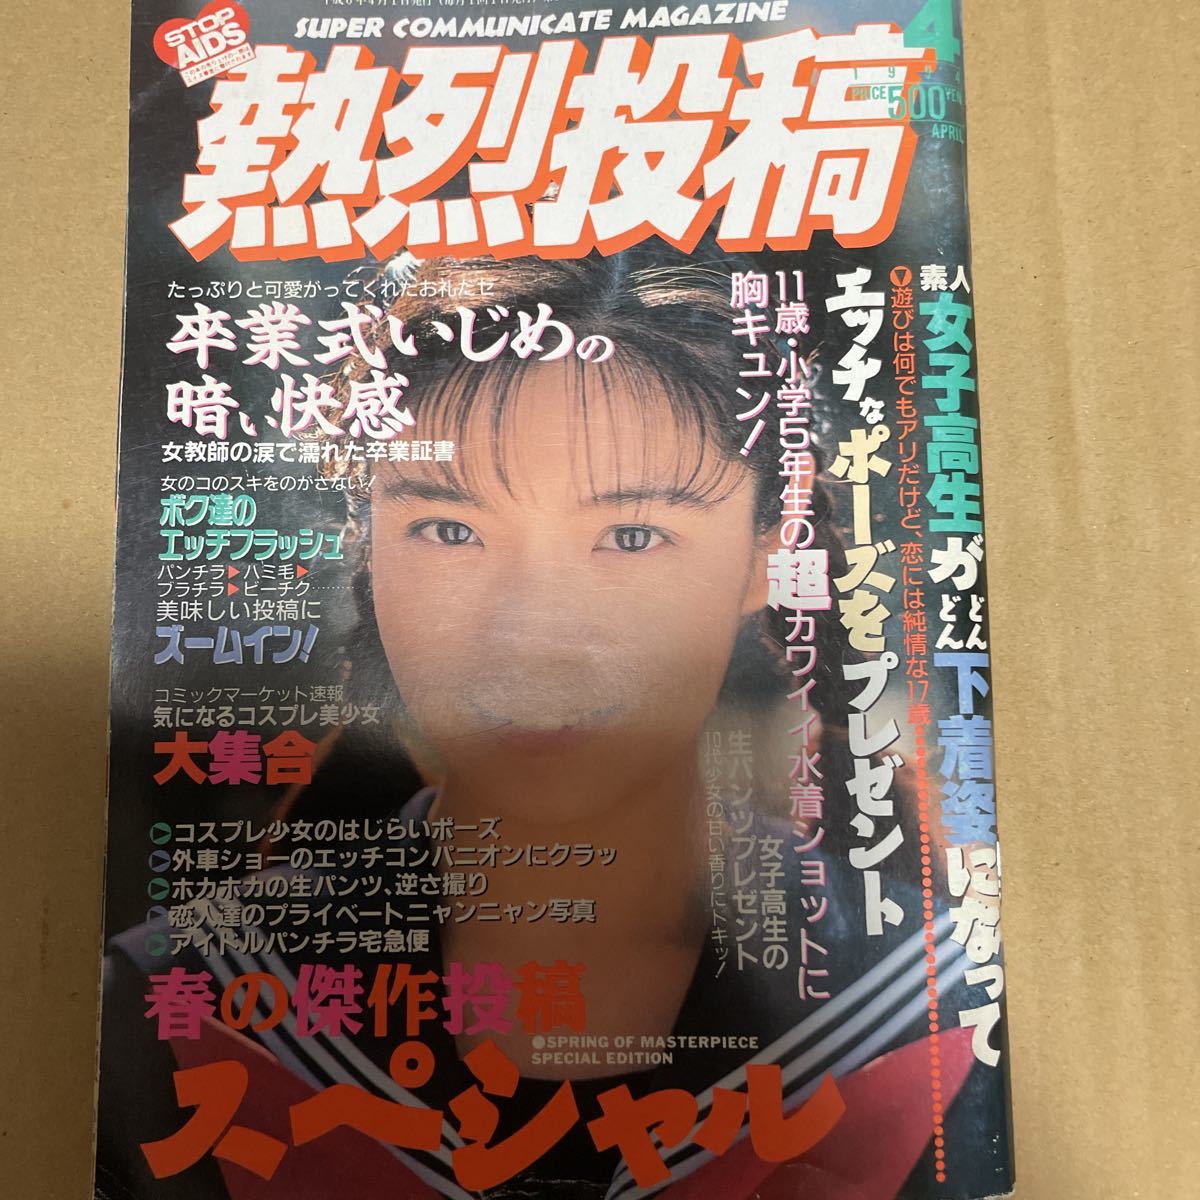 セーラーメイトDX.7月号増刊 Tzone スクール - 雑誌